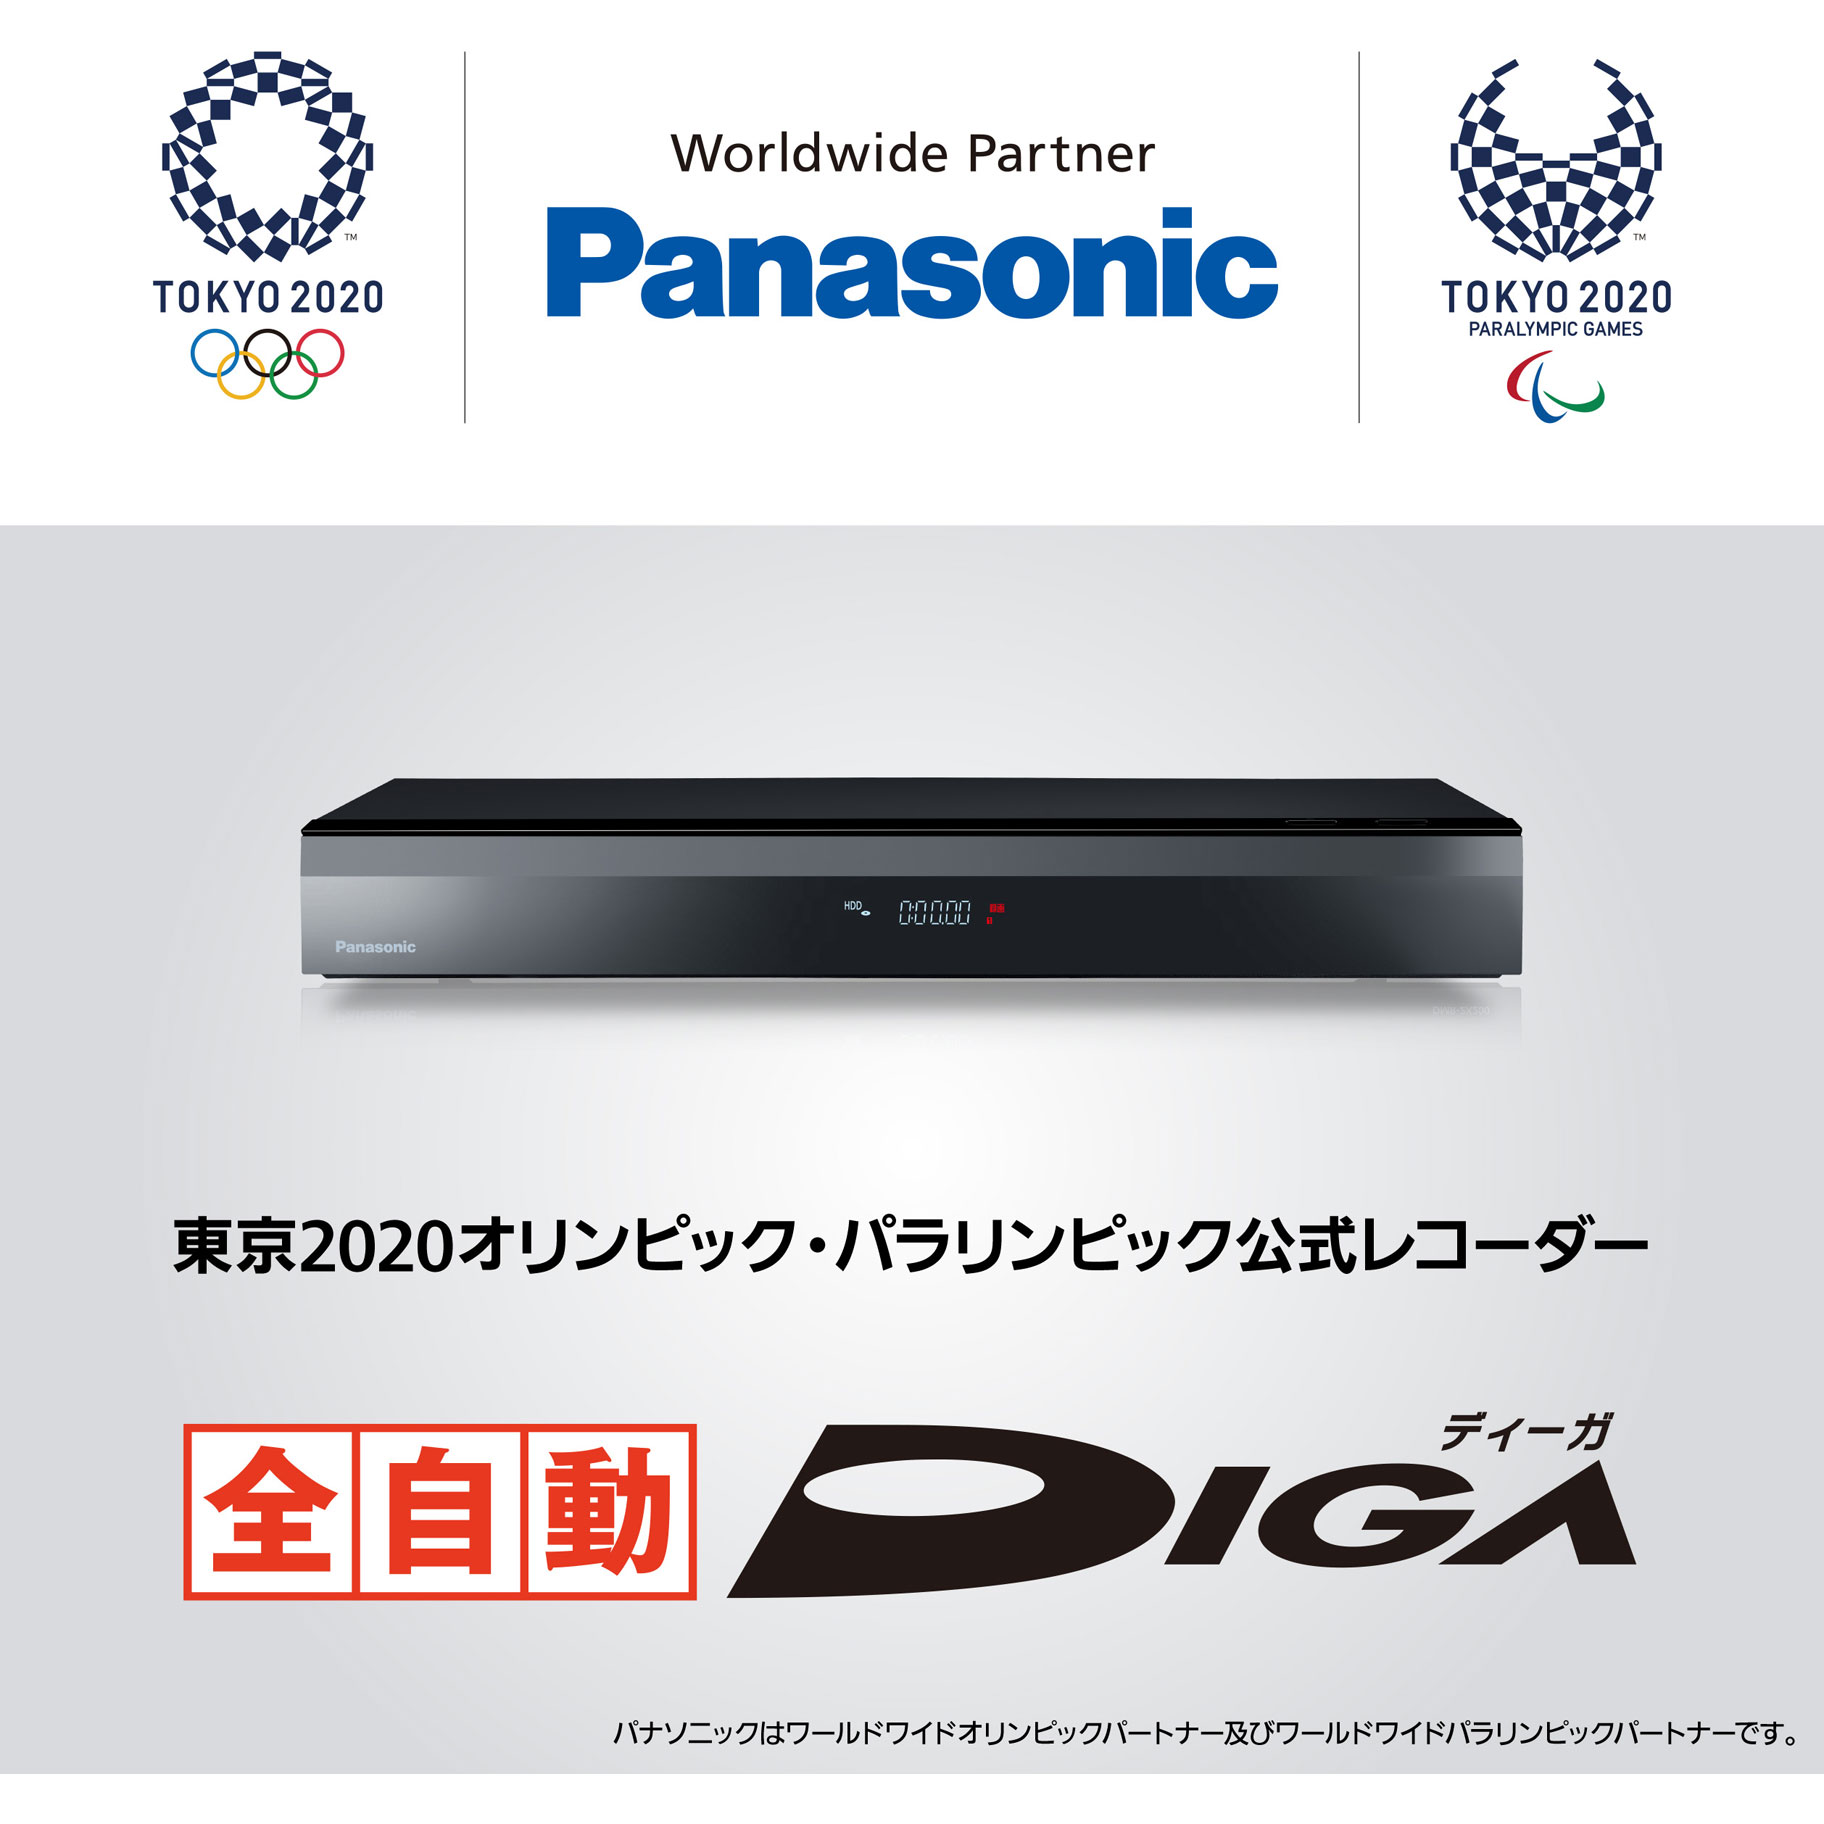 楽天市場 Panasonic パナソニック ブルーレイレコーダー Diga ディーガ Dmr 2x301 3tb 全自動録画対応 Dmr2x301 ソフマップ デジタルコレクション